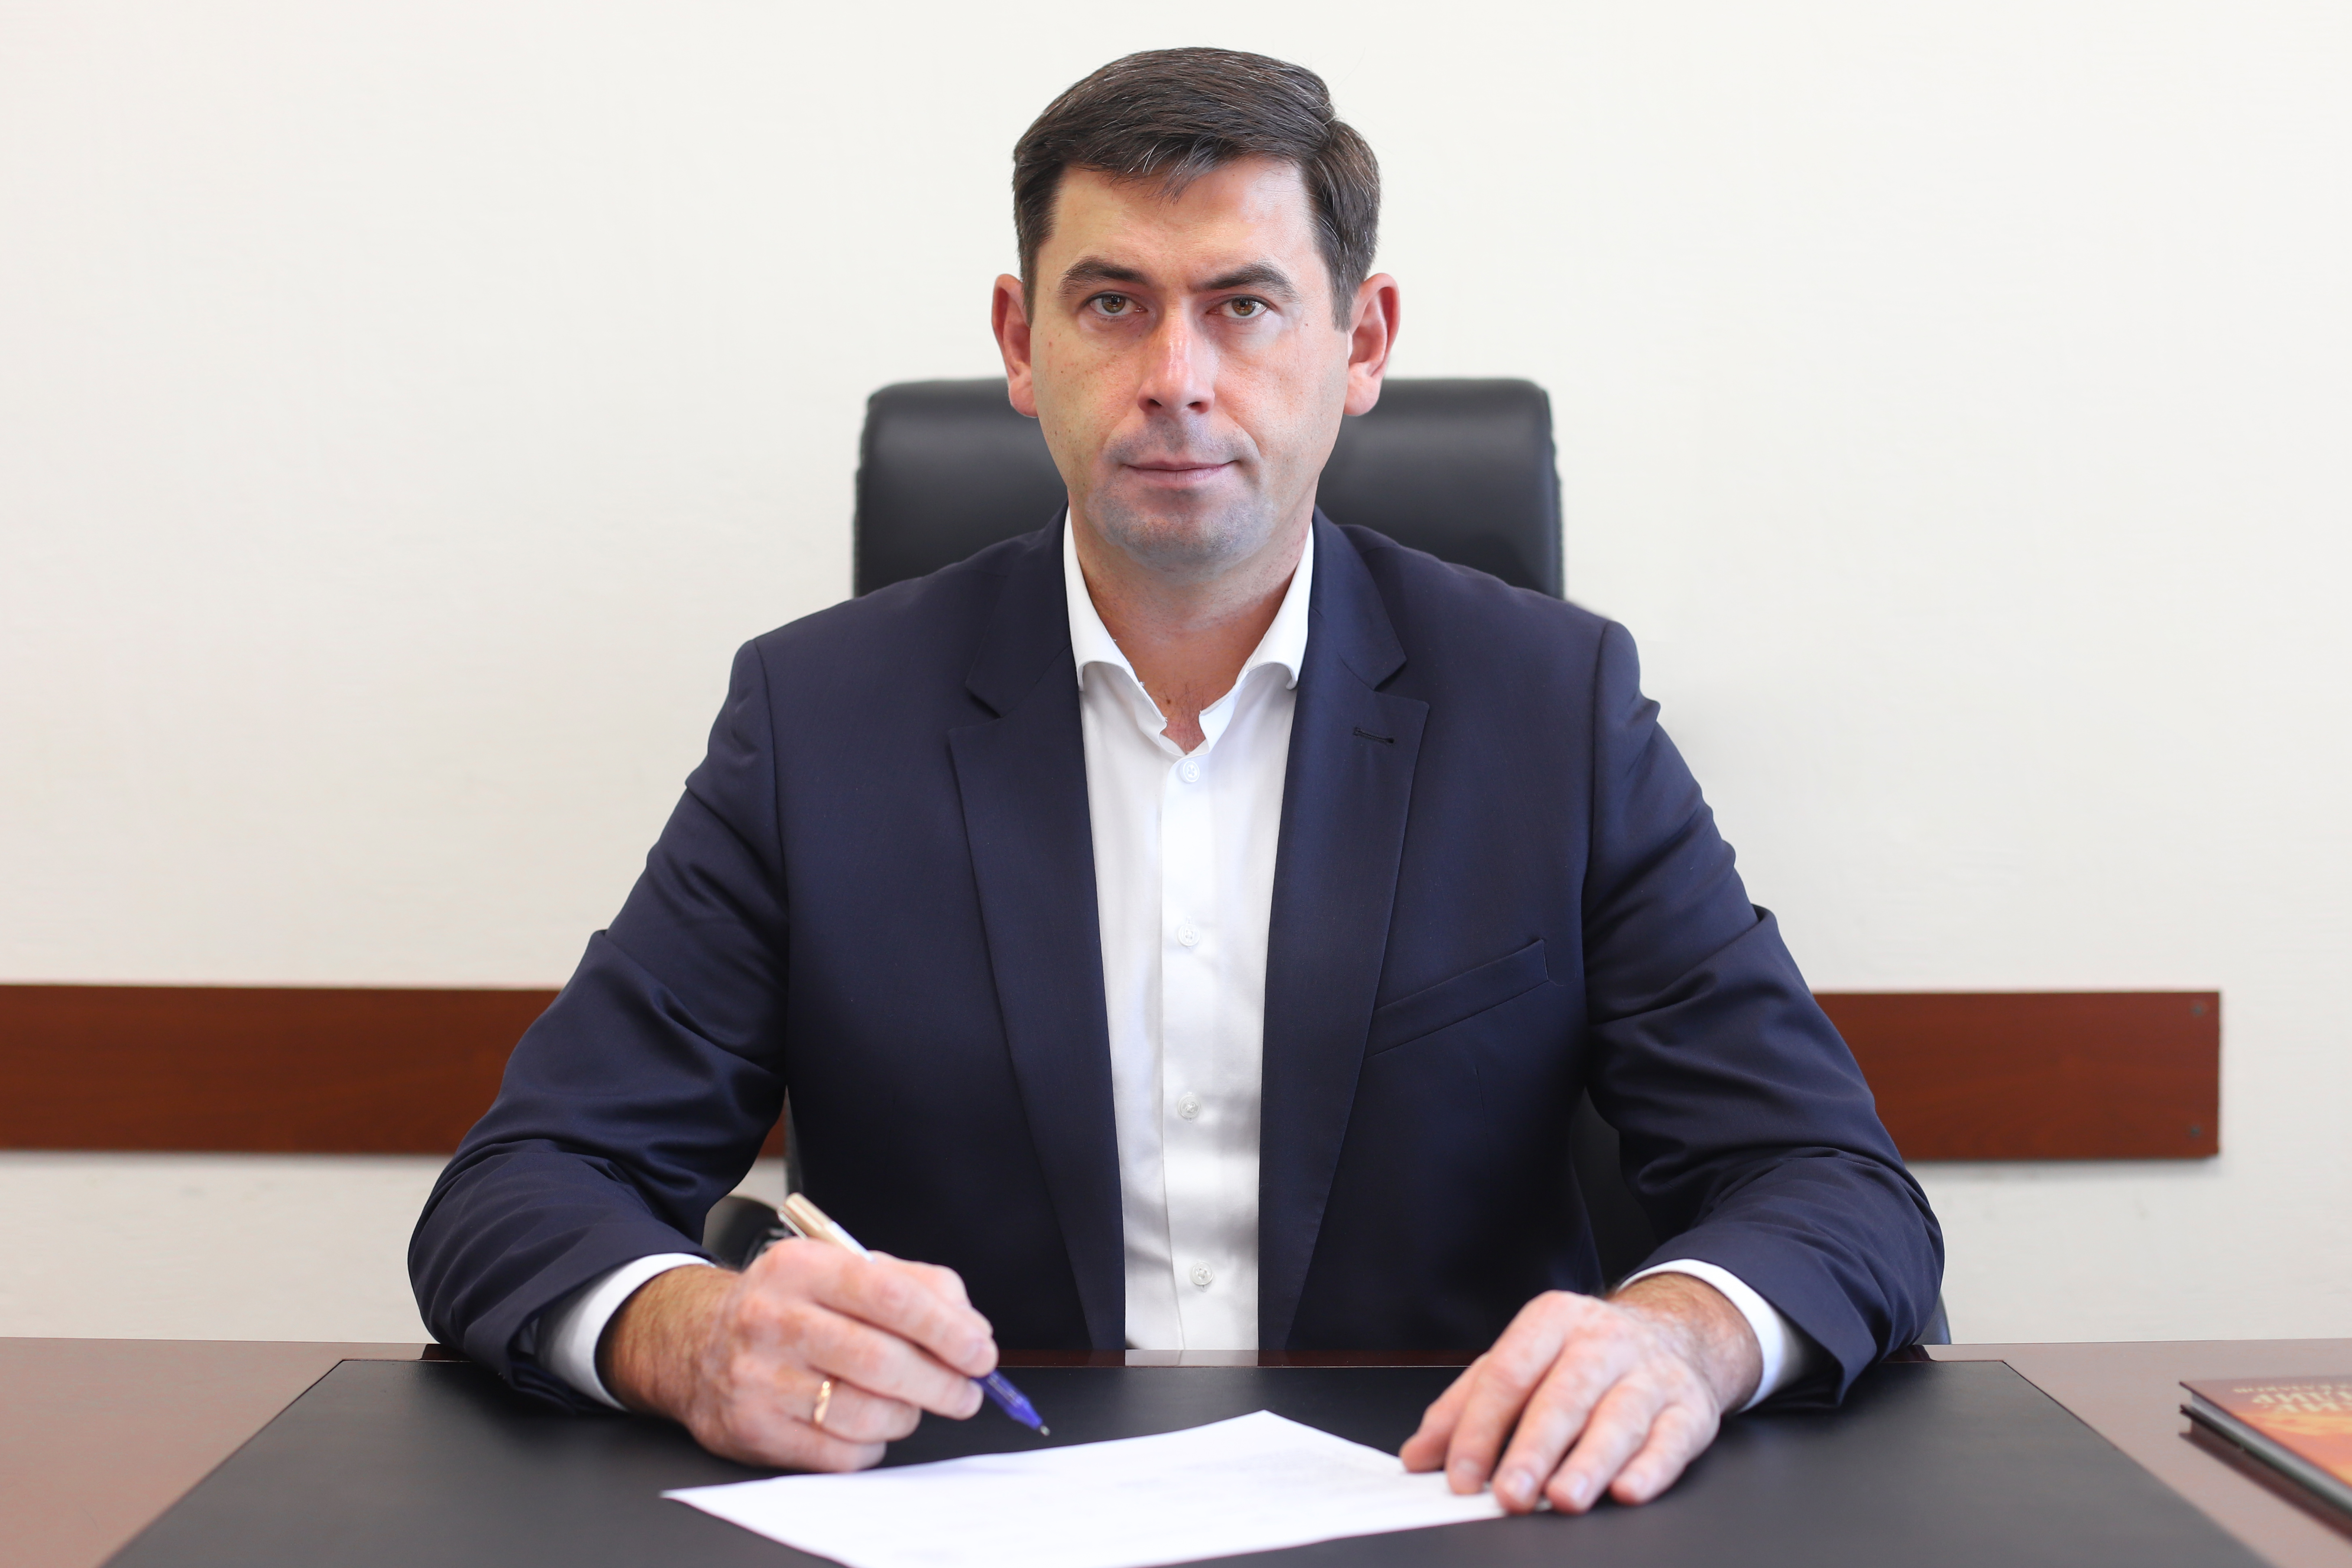 С 22 июня обязанности руководителя района будет исполнять  Станислав Гайнюченко, который ранее занимал должность мэра Усть-Лабинска